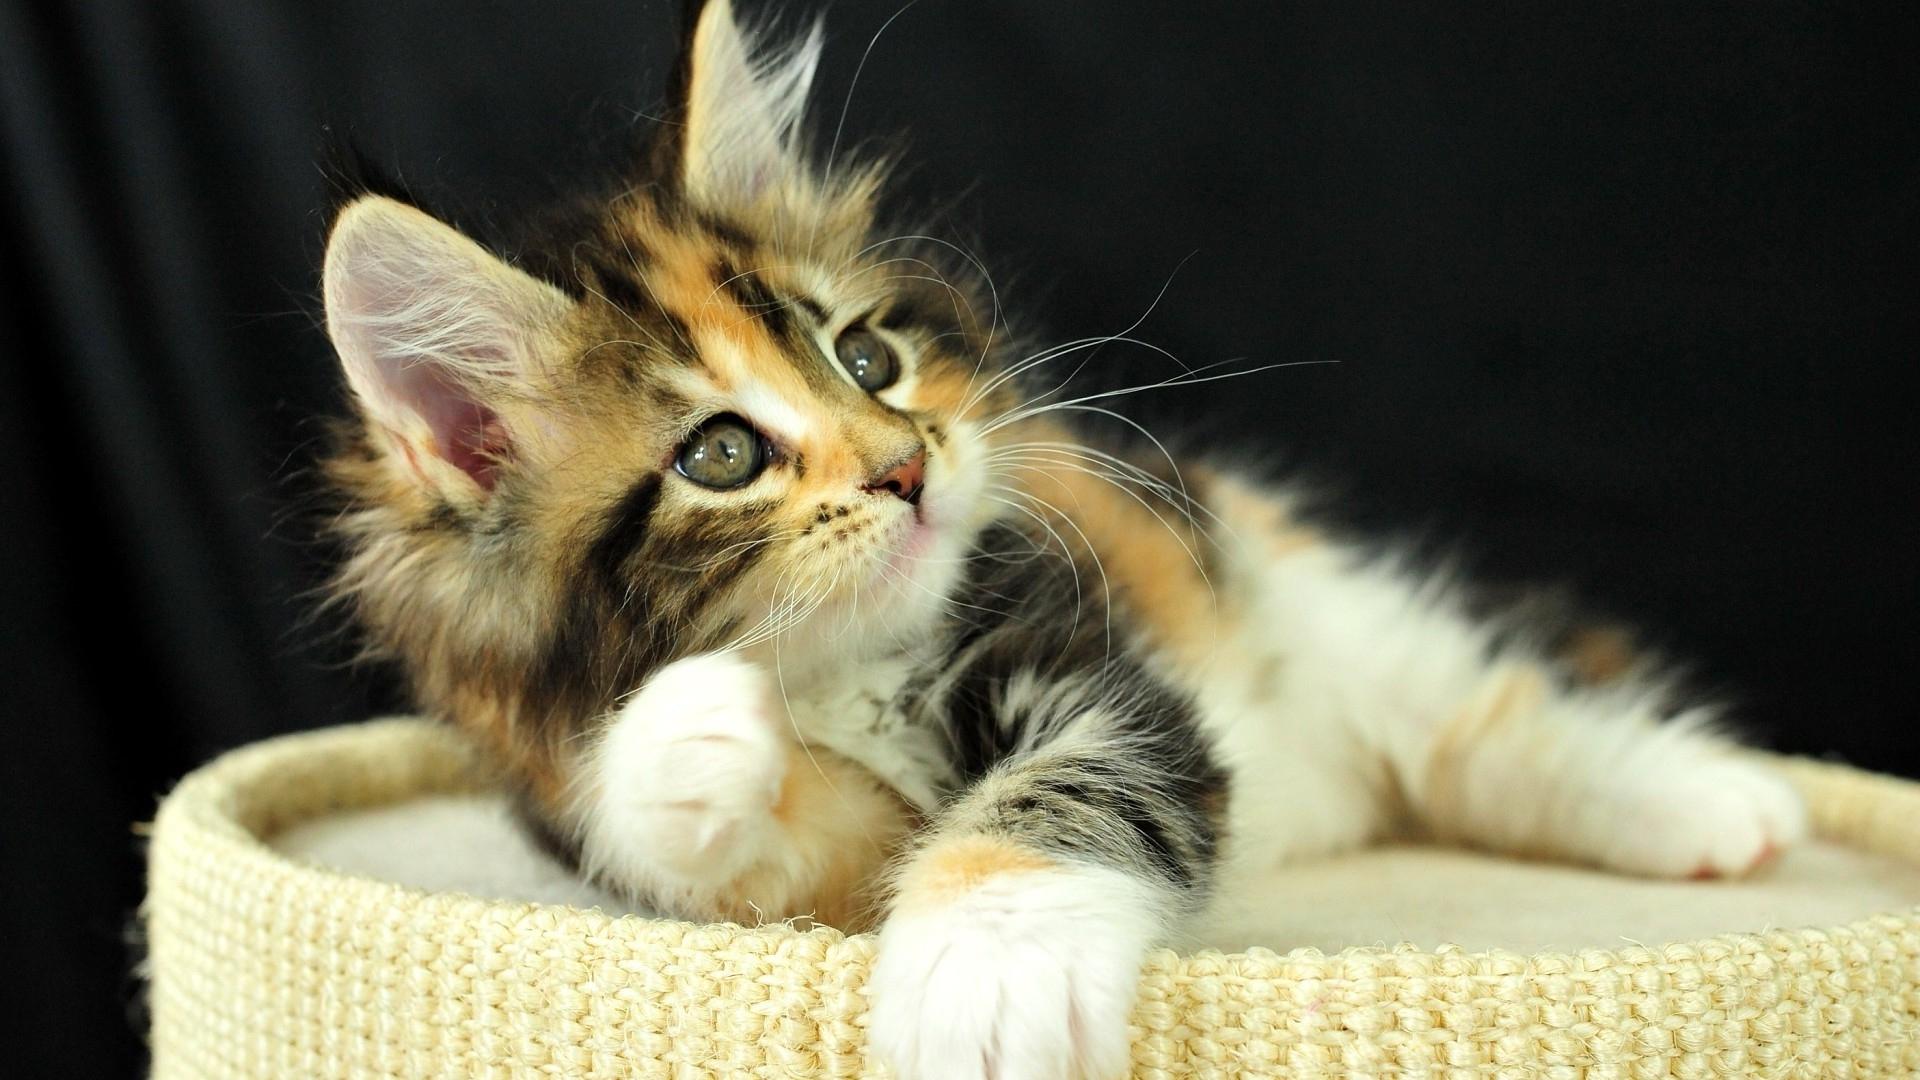 Cute Kitten HD Wallpaper | Background Image | 1920x1080 | ID:702176